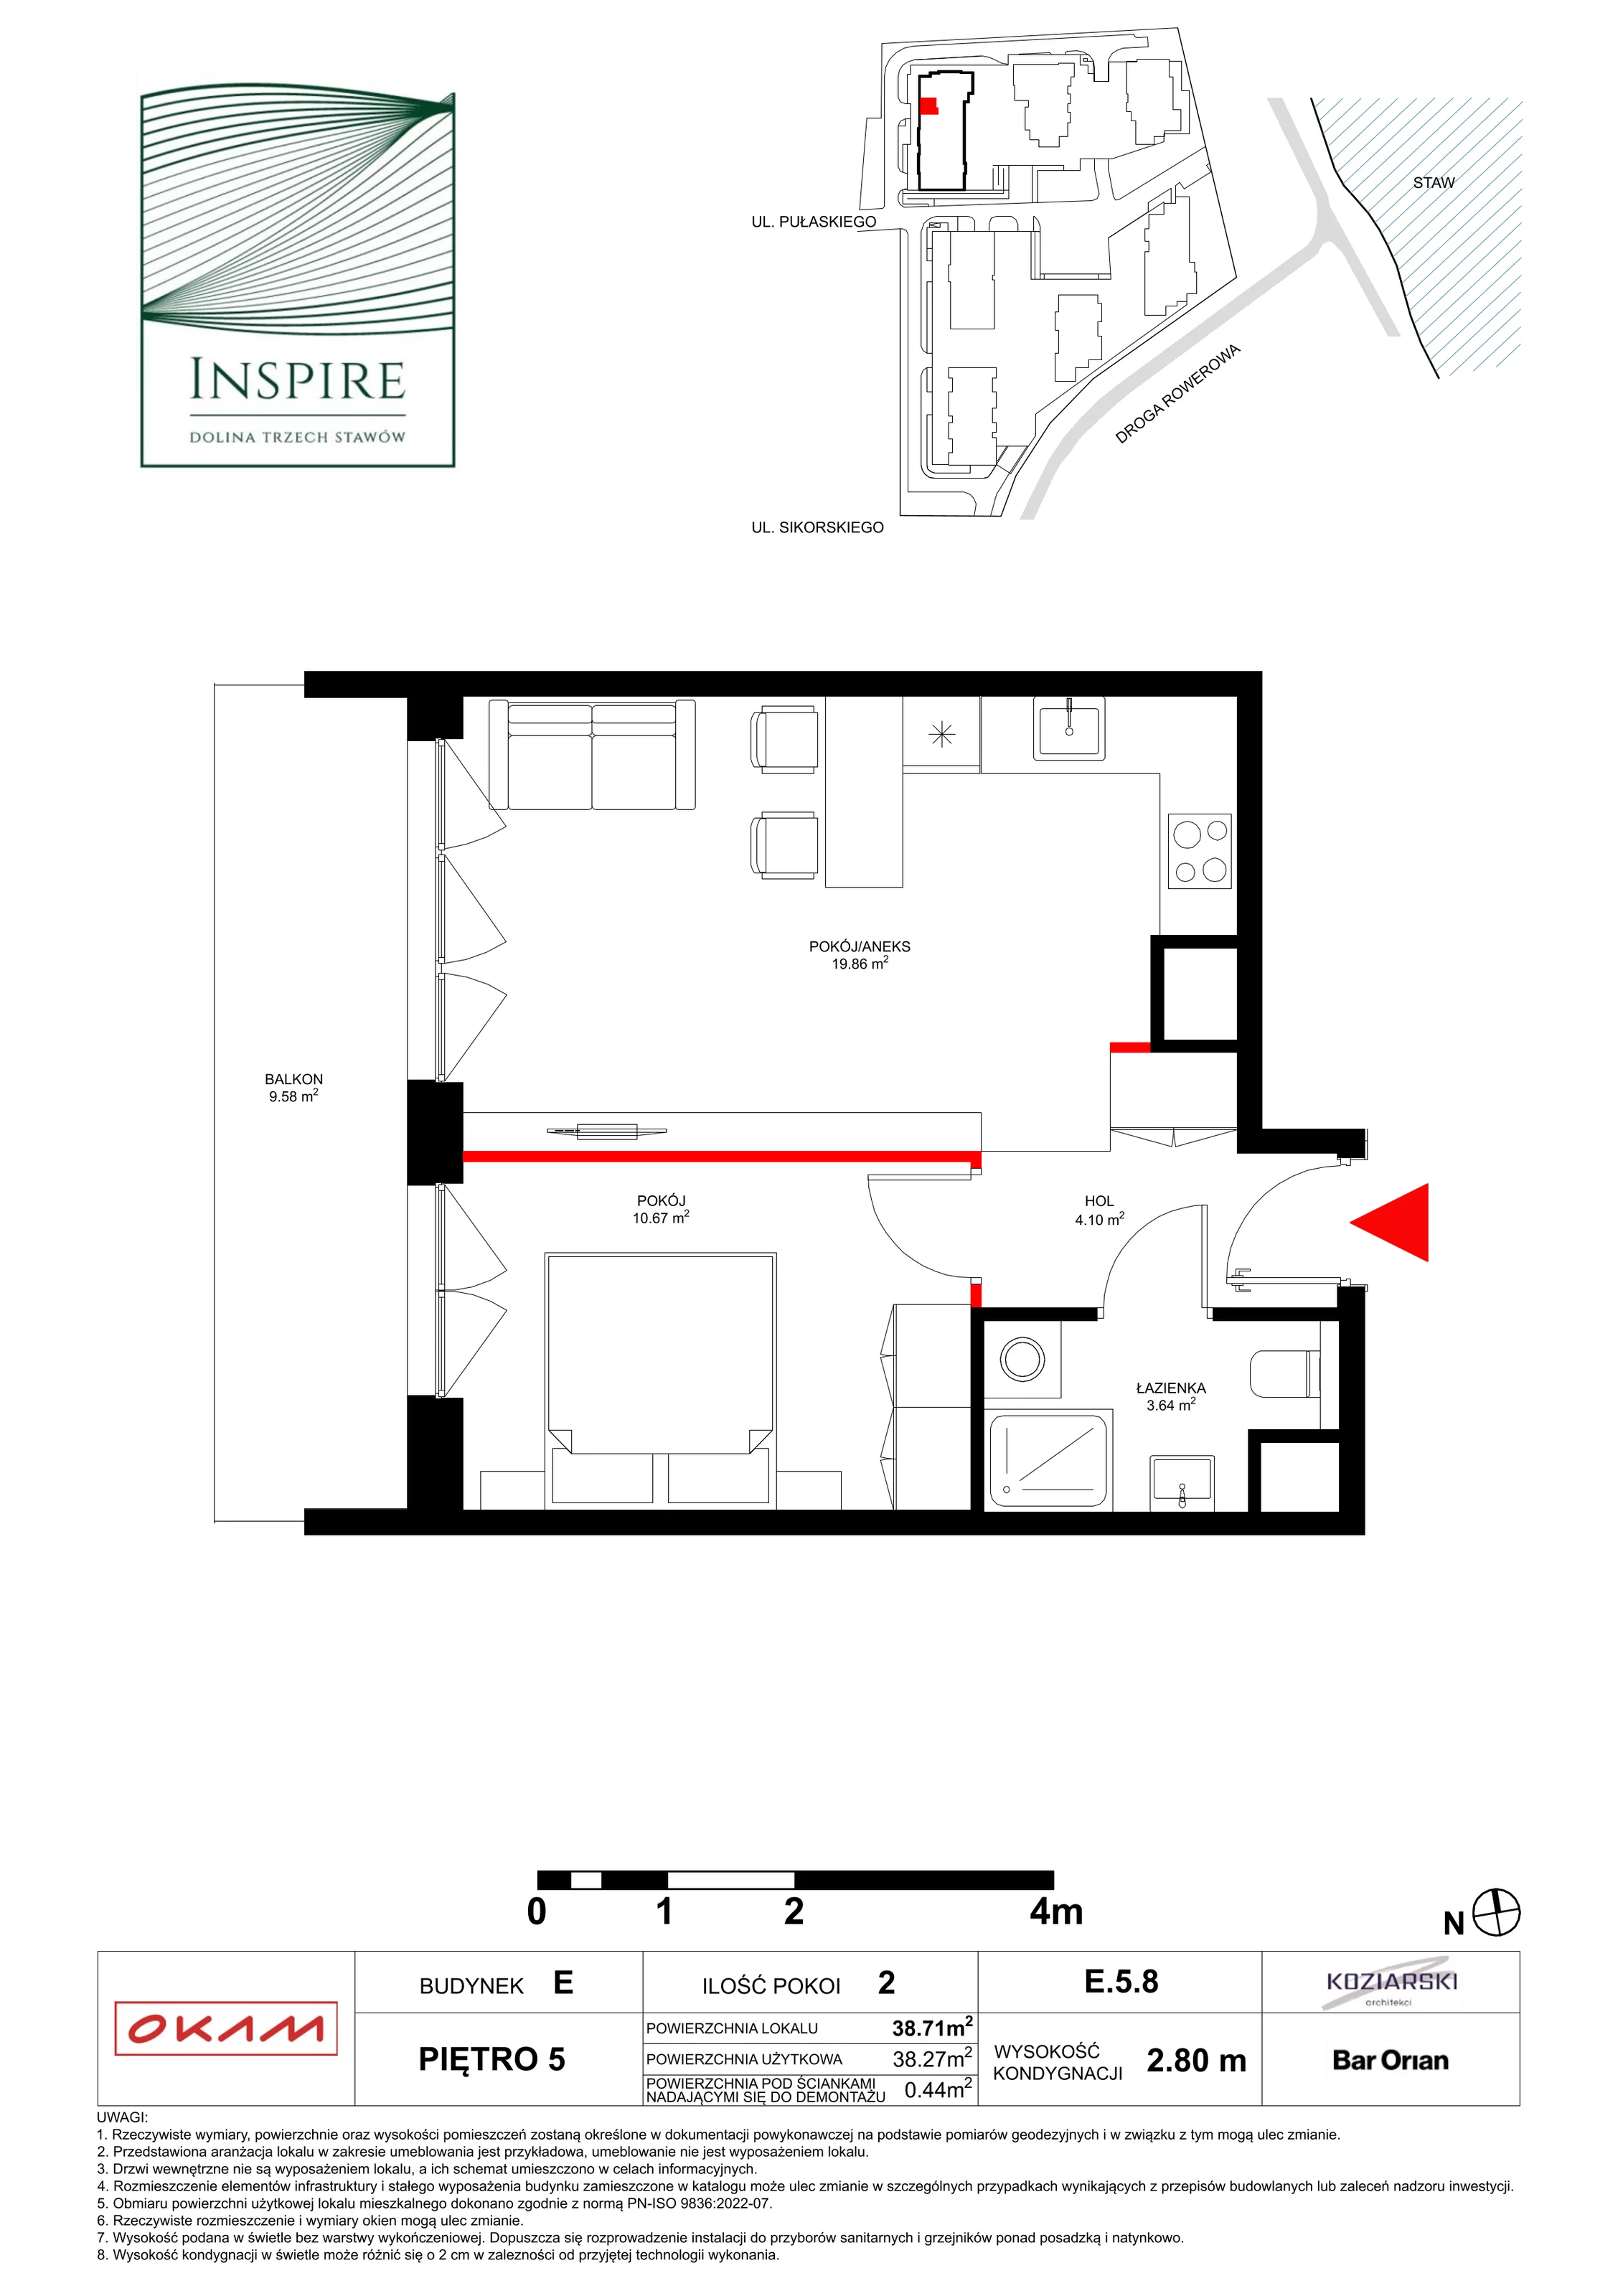 Apartament 38,27 m², piętro 5, oferta nr E.5.8, Inspire, Katowice, Osiedle Paderewskiego-Muchowiec, Dolina Trzech Stawów, ul. gen. Sikorskiego 41